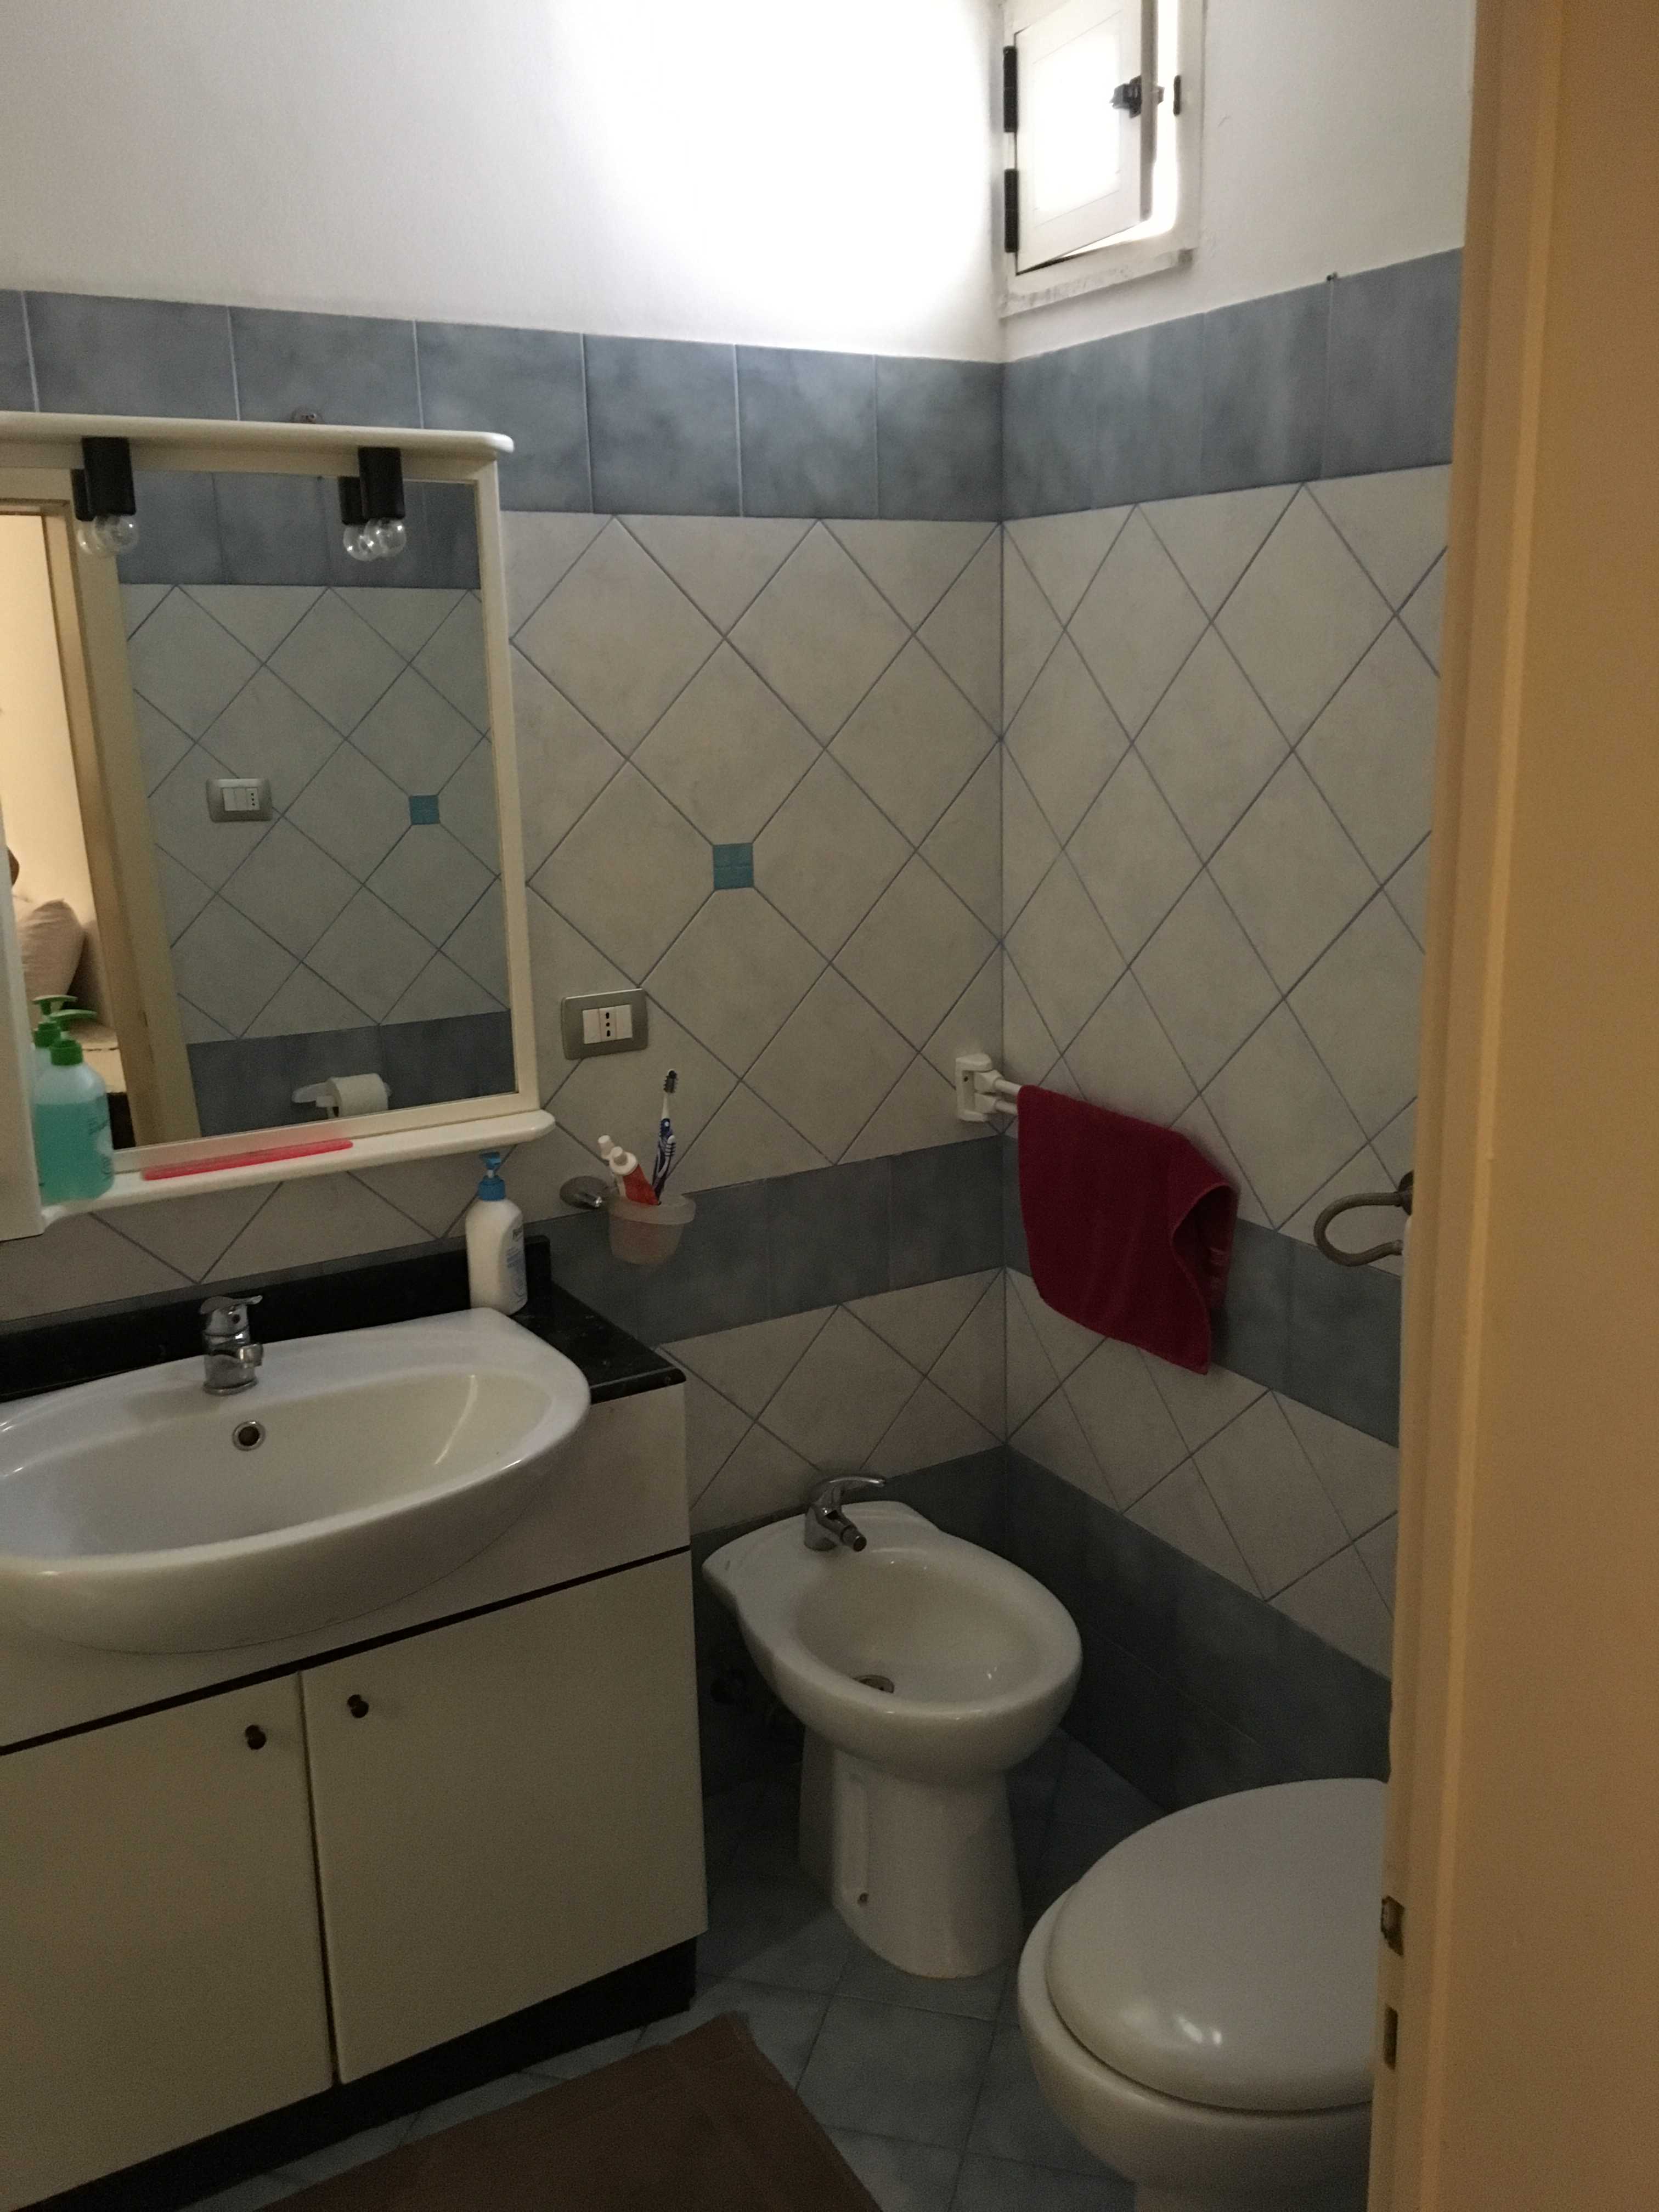 Vendite Salento: Vendita appartamento (Alessano) - bagno